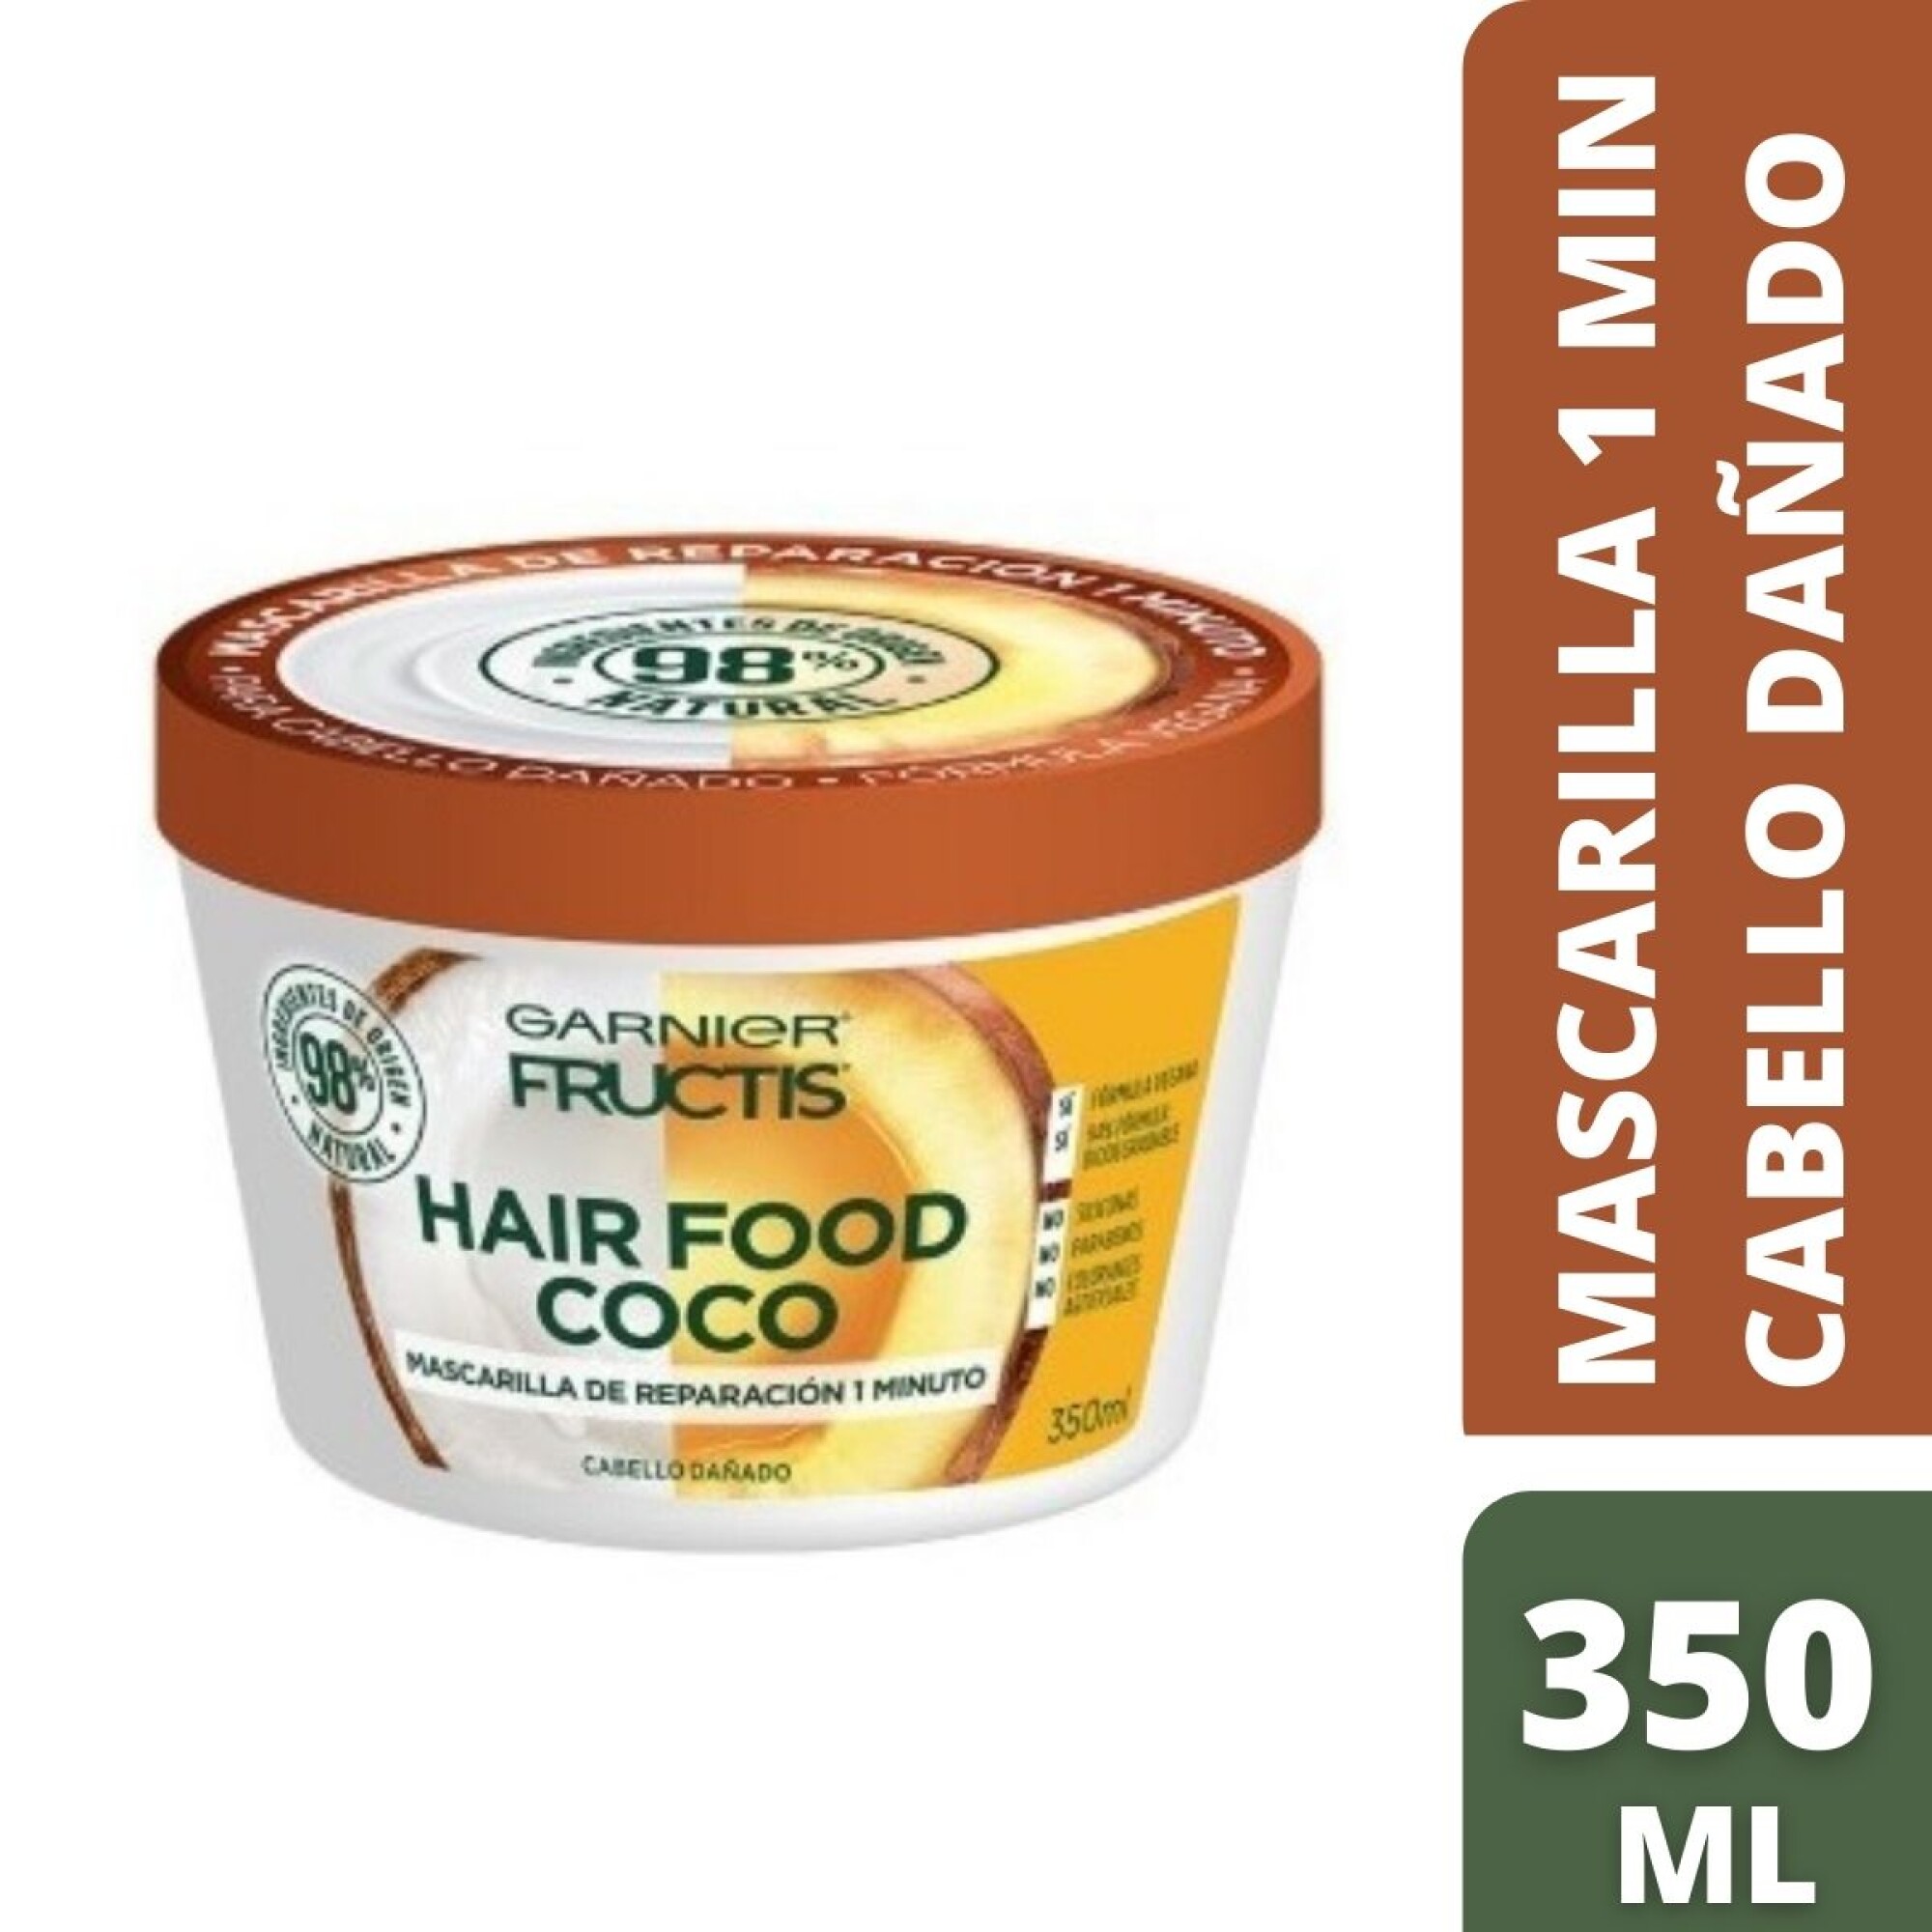 Flor de la ciudad Difuminar Desaparecer Mascarilla Garnier Fructis Hair Food Coco 350 ML — Coral